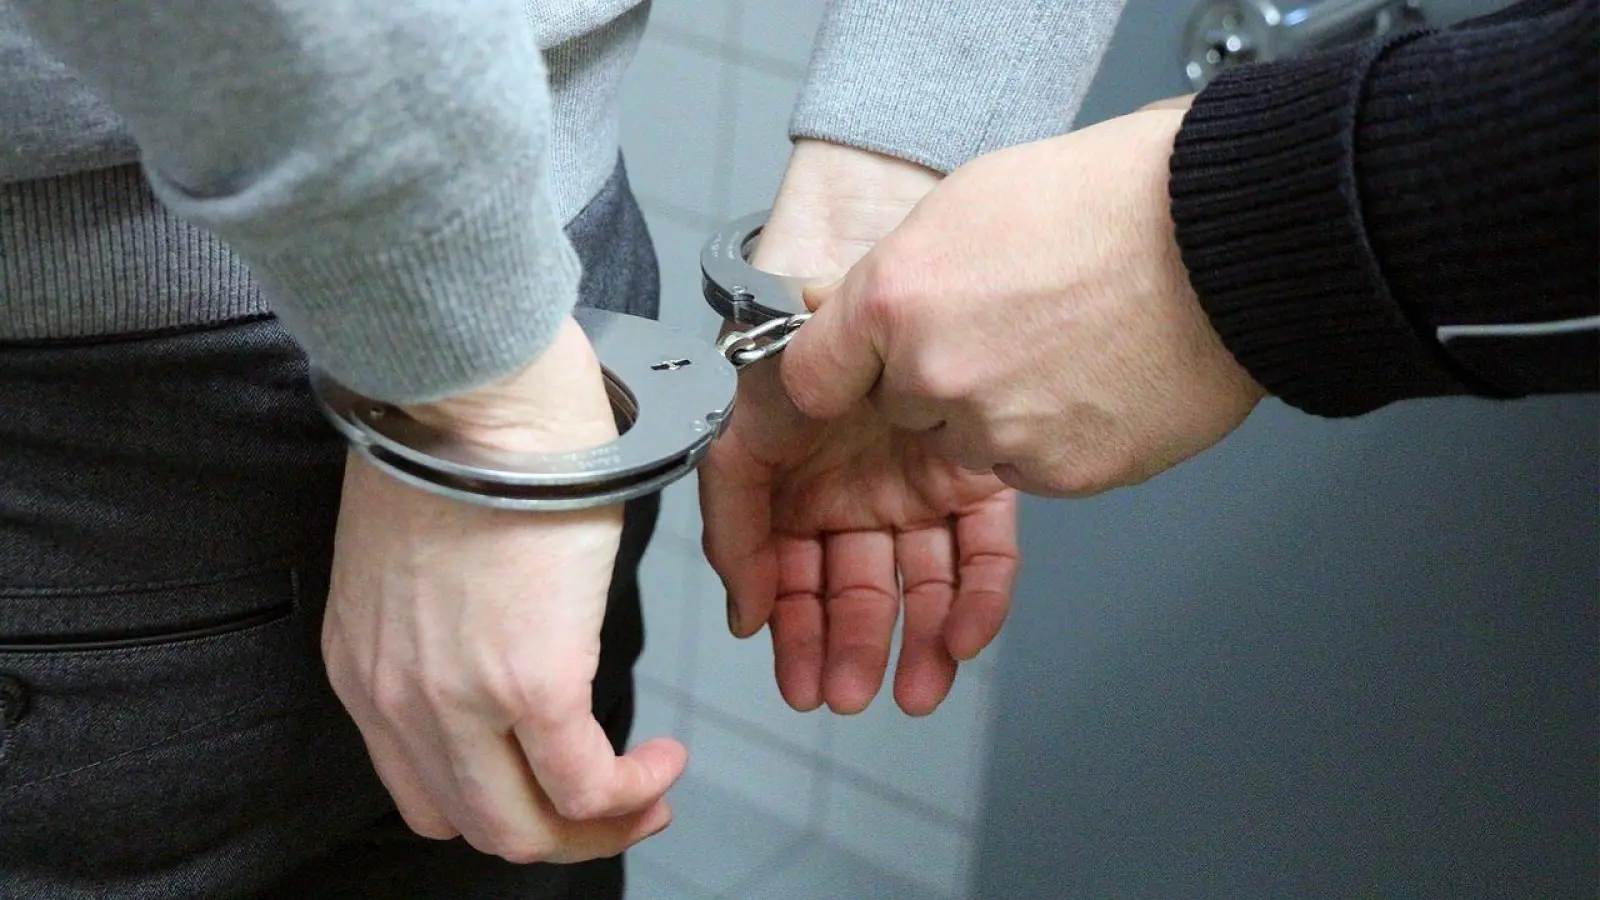 Vorläufige Festnahme eines Tauchaers wegen Drogenbesitzes (Foto: taucha-kompakt.de)